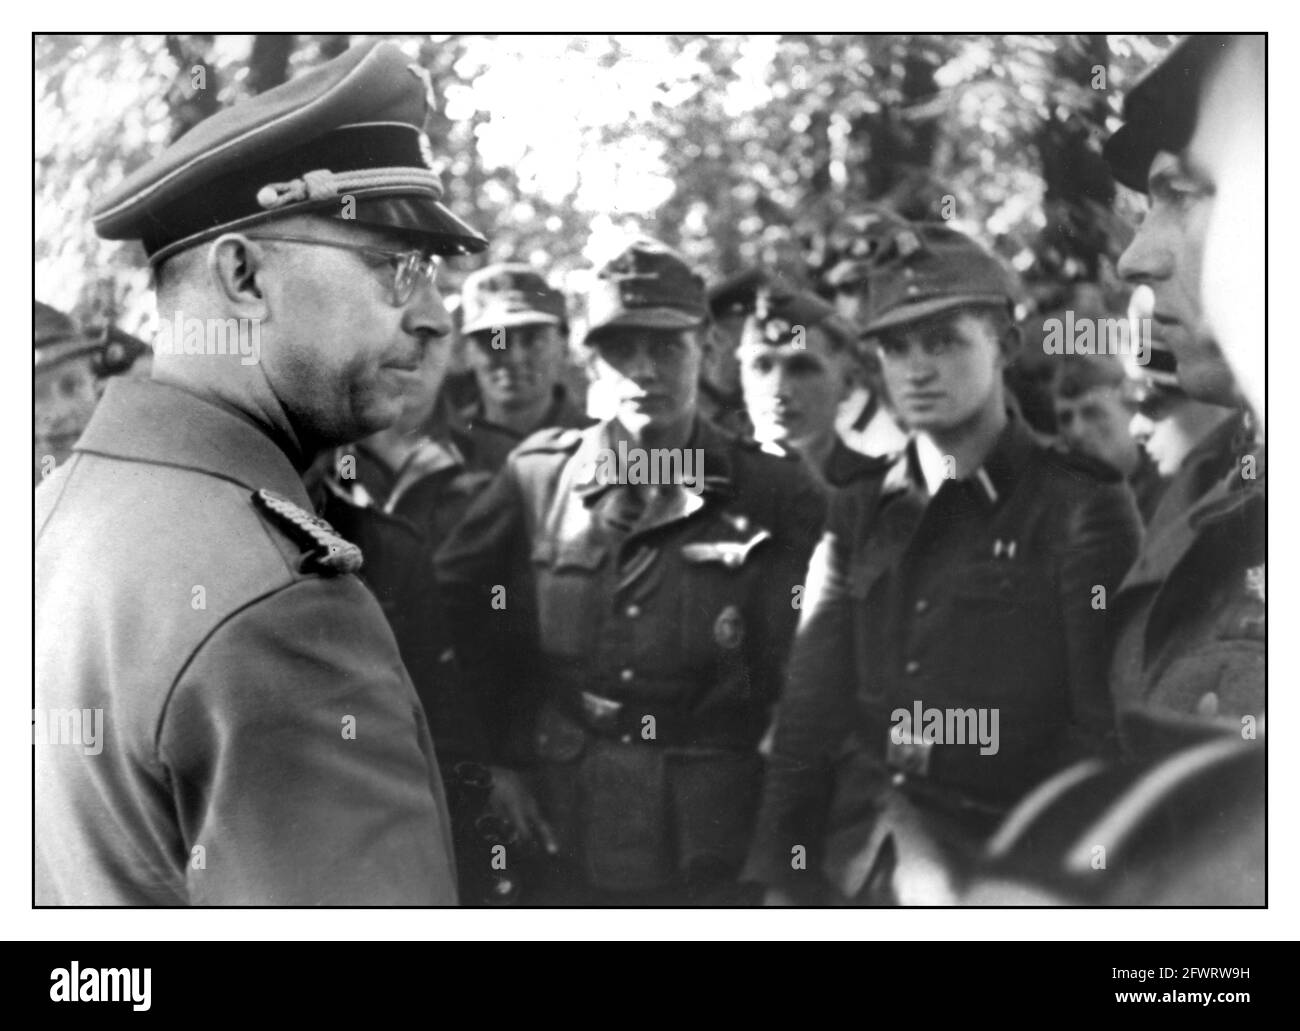 HIMMLER 1940er Jahre Heinrich Luitpold Himmler im Gespräch mit Soldaten der Waffen-SS war er Reichsführer der Schutzstaffel (SS) und ein führendes Mitglied der NSDAP in Deutschland. Himmler war einer der mächtigsten Männer in Nazi-Deutschland und ein Hauptarchitekt des Holocaust. Stockfoto